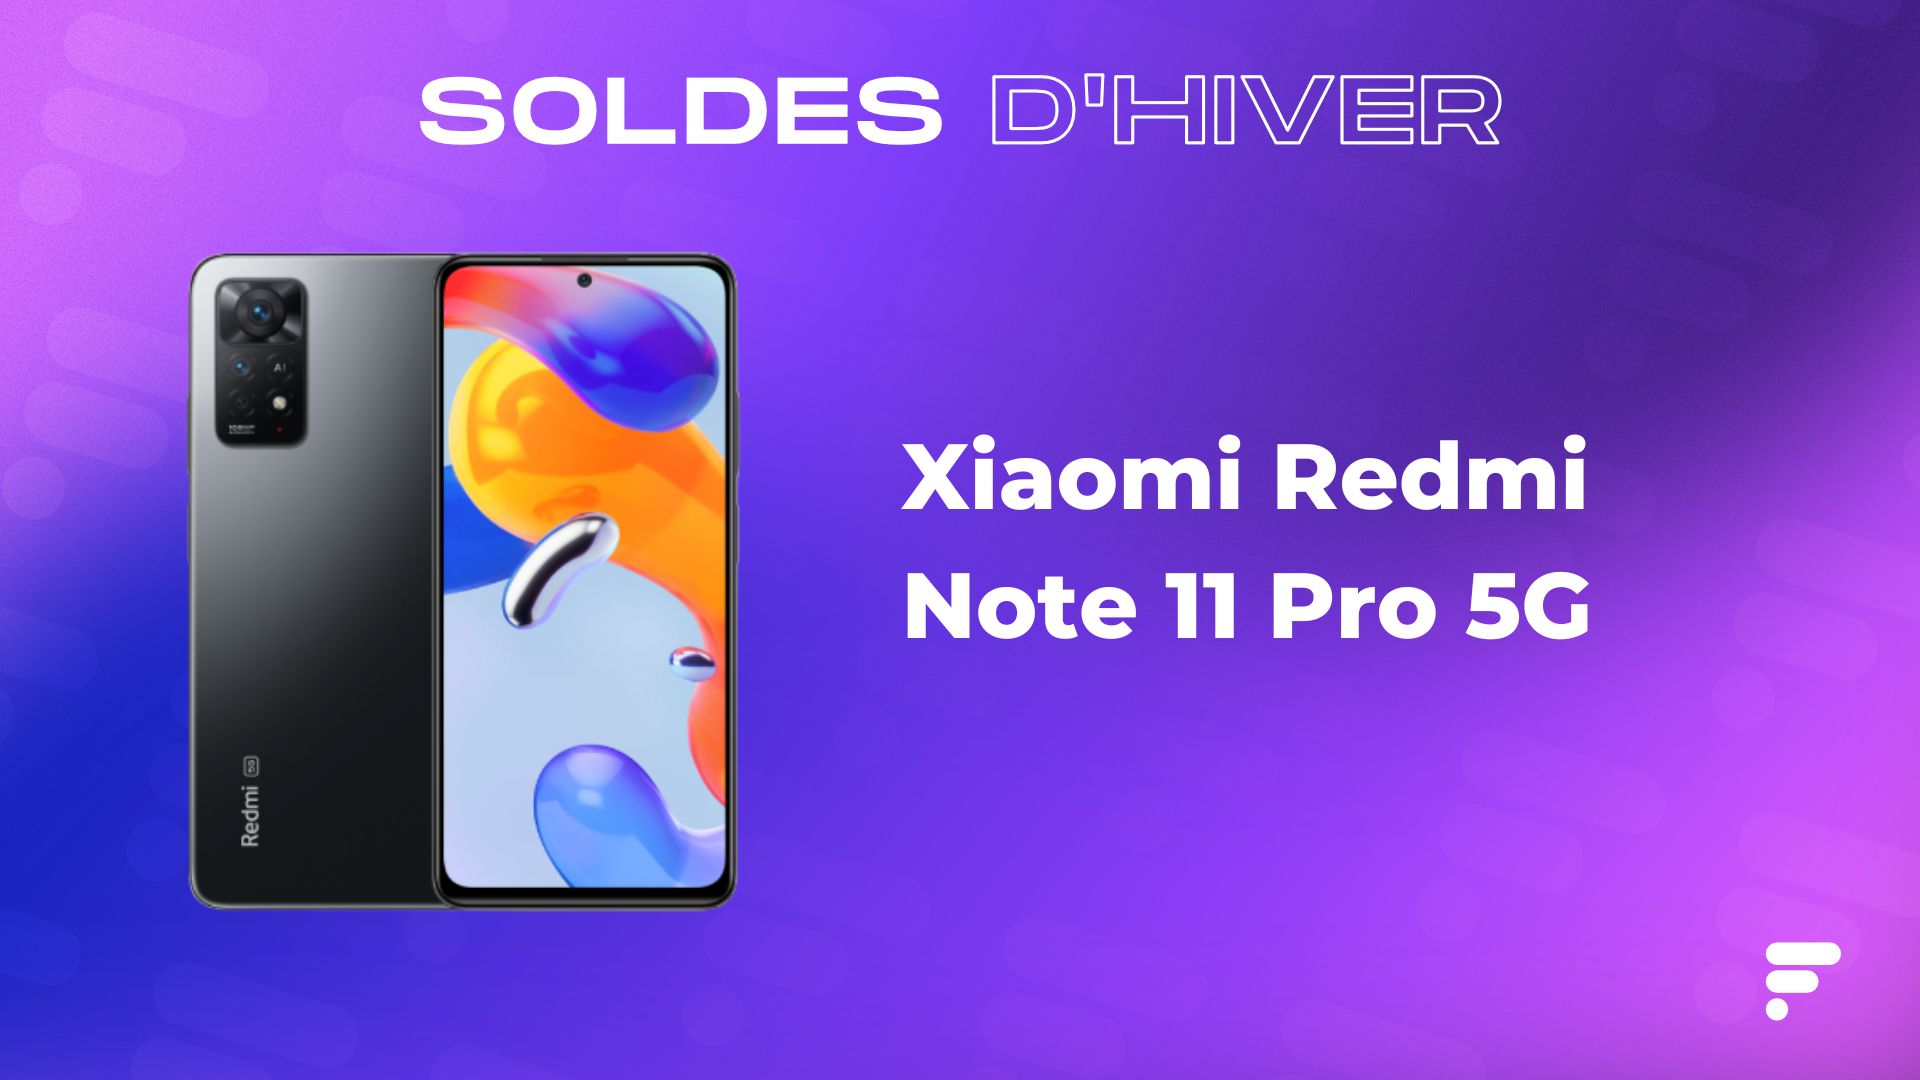 Le Xiaomi Redmi Note 11 Pro 5G est à prix canon avec ce code spécial soldes